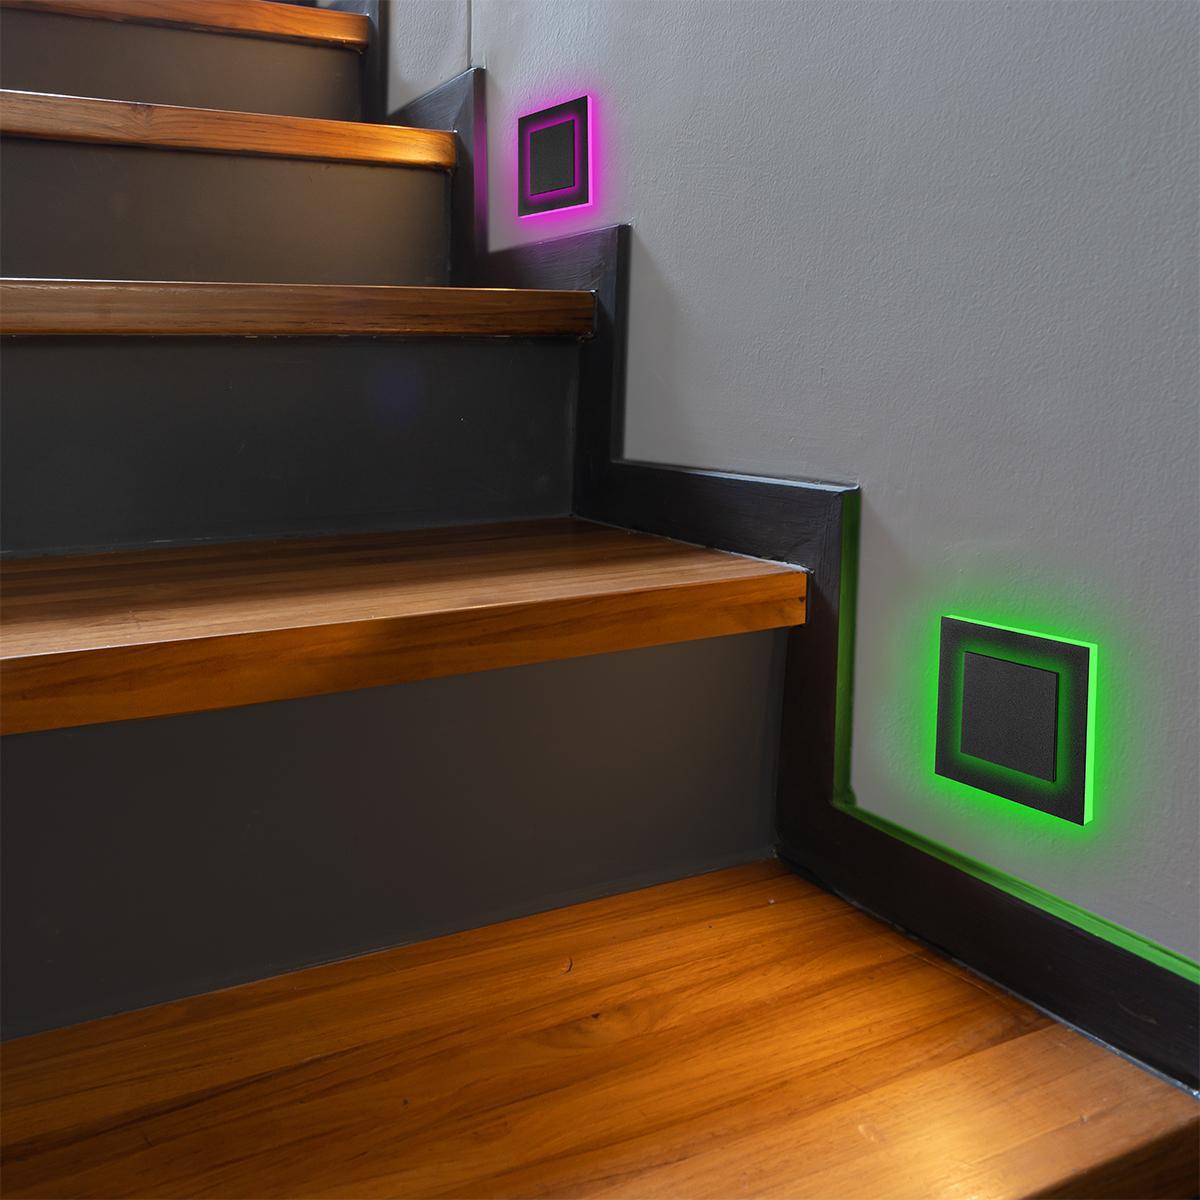 LED Treppenleuchte 230V Stufenlicht eckig schwarz - Lichtfarbe: RGB Warmweiß 3W - Lichtaustritt: Doppio